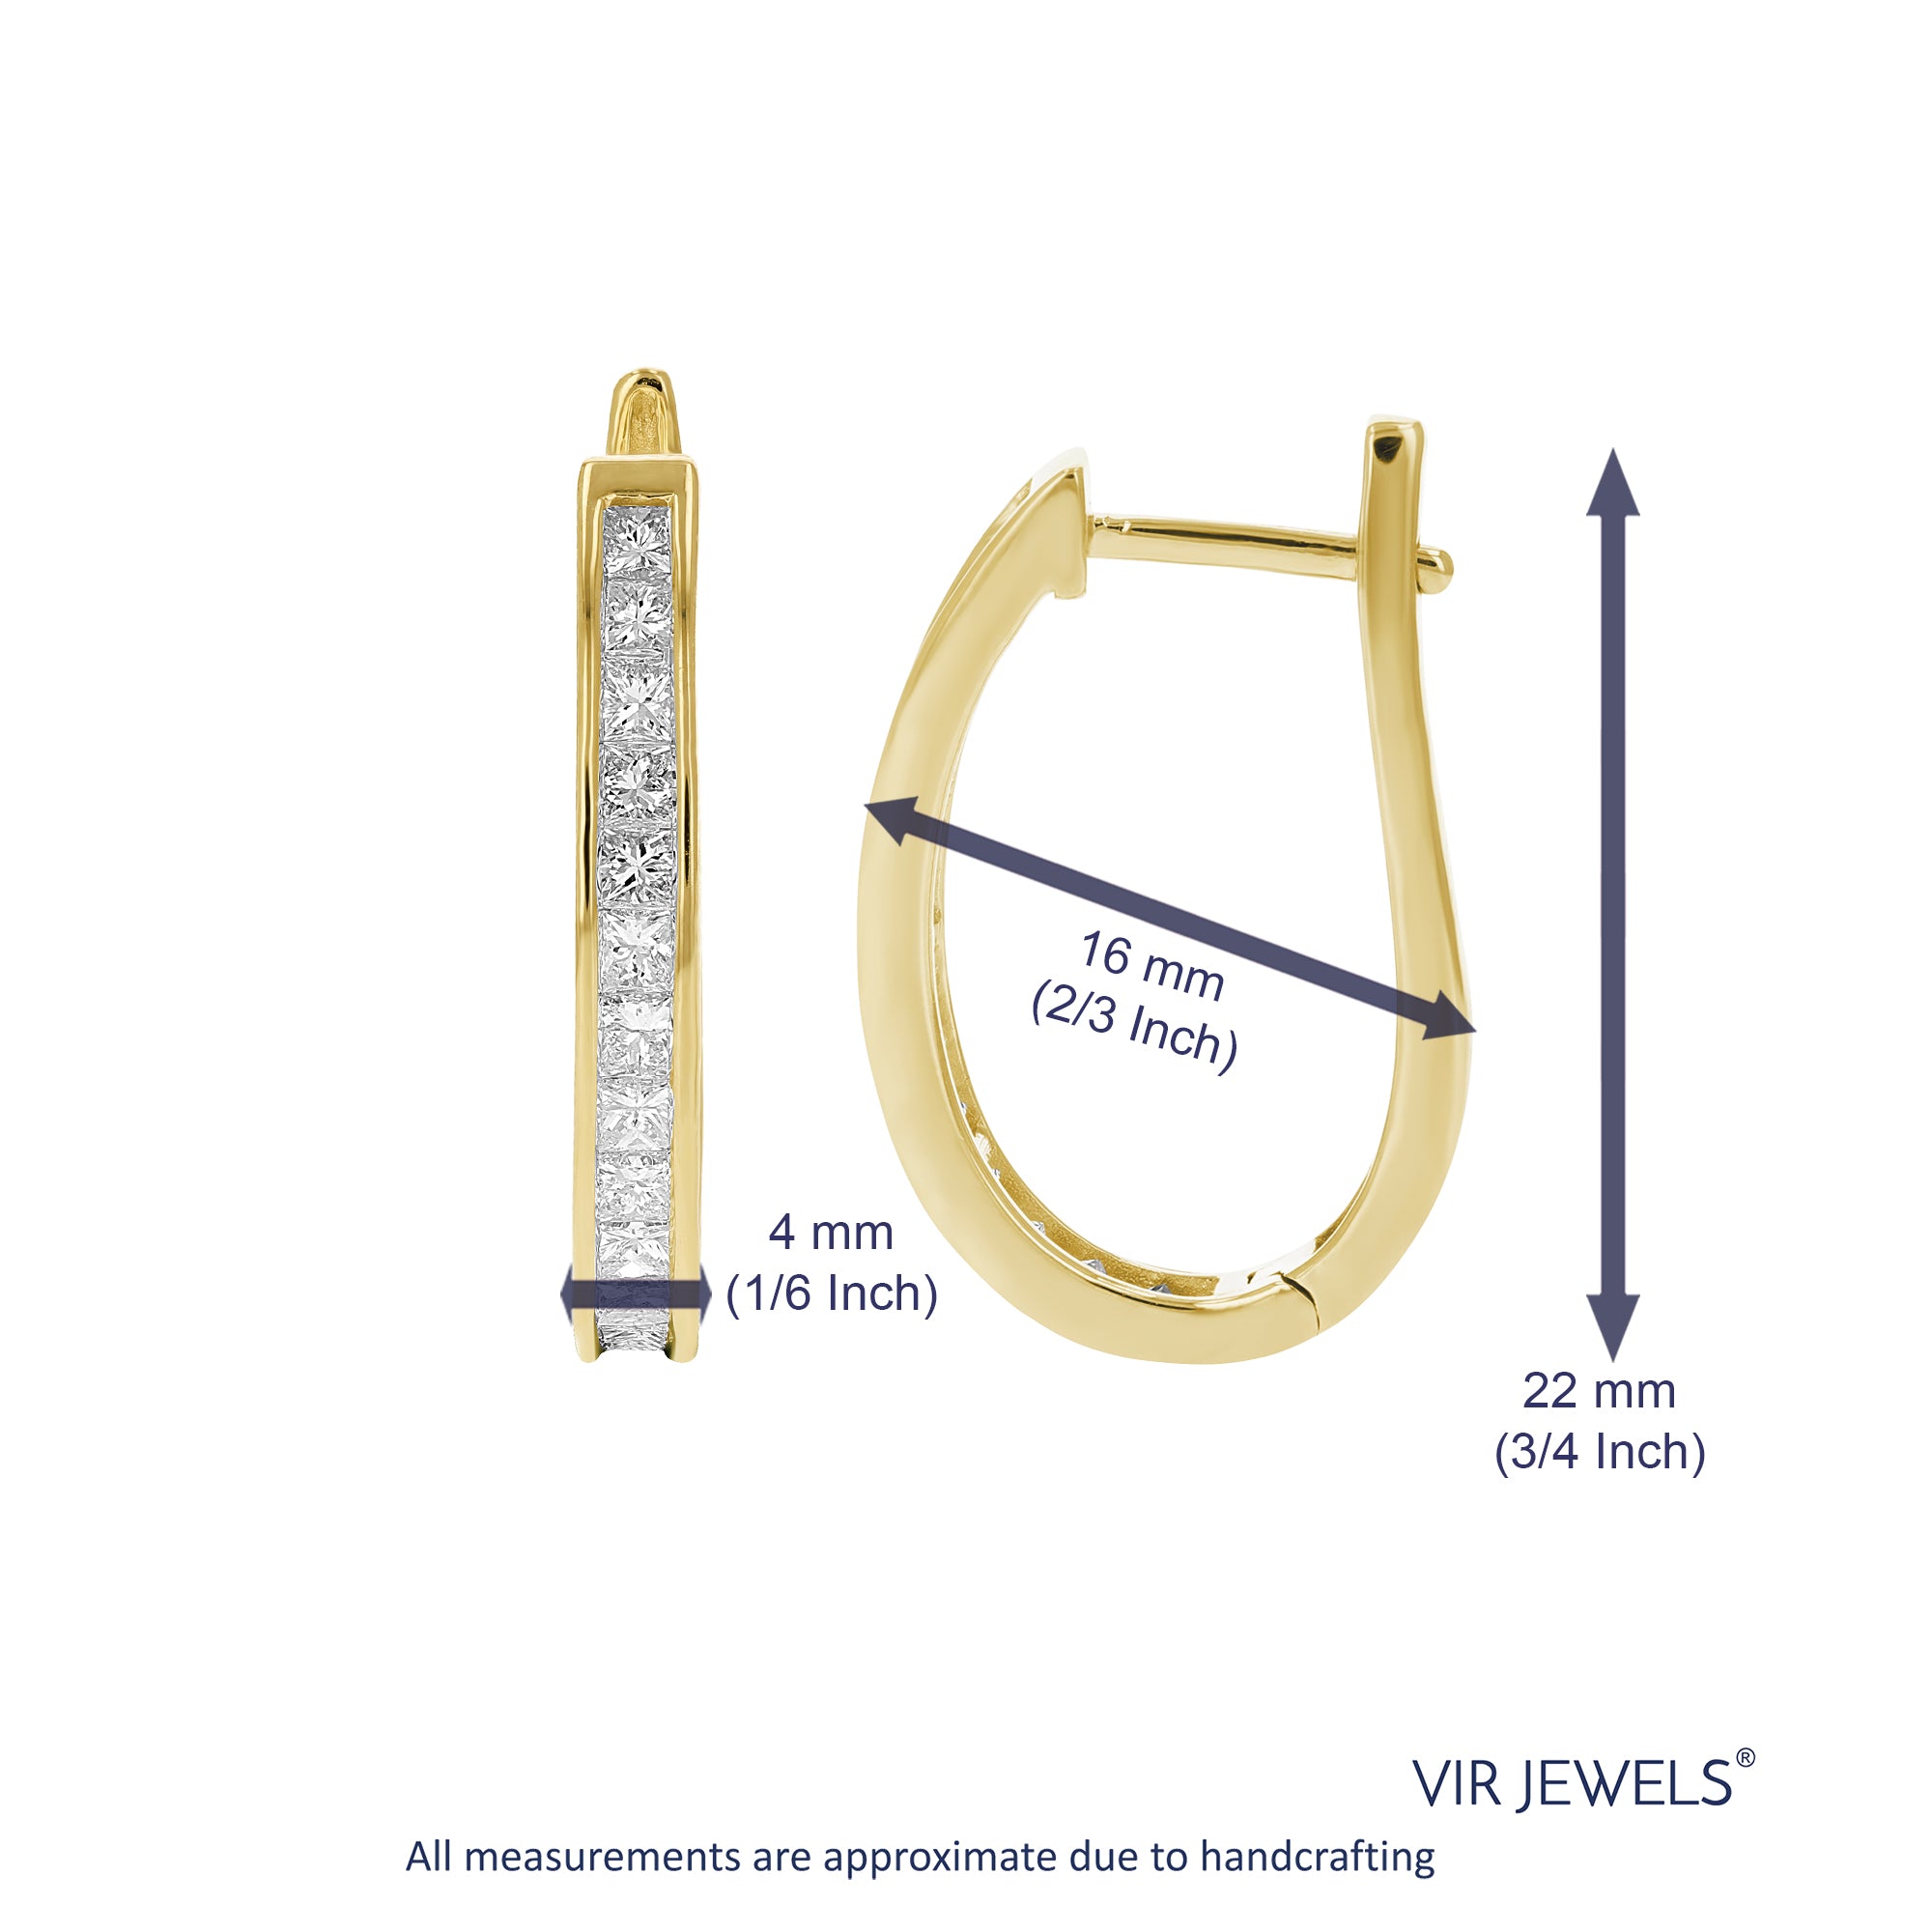 1.50 cttw Princess Cut Diamond Hoop Earrings 14K Yellow Gold Channel Set 0.66 inch